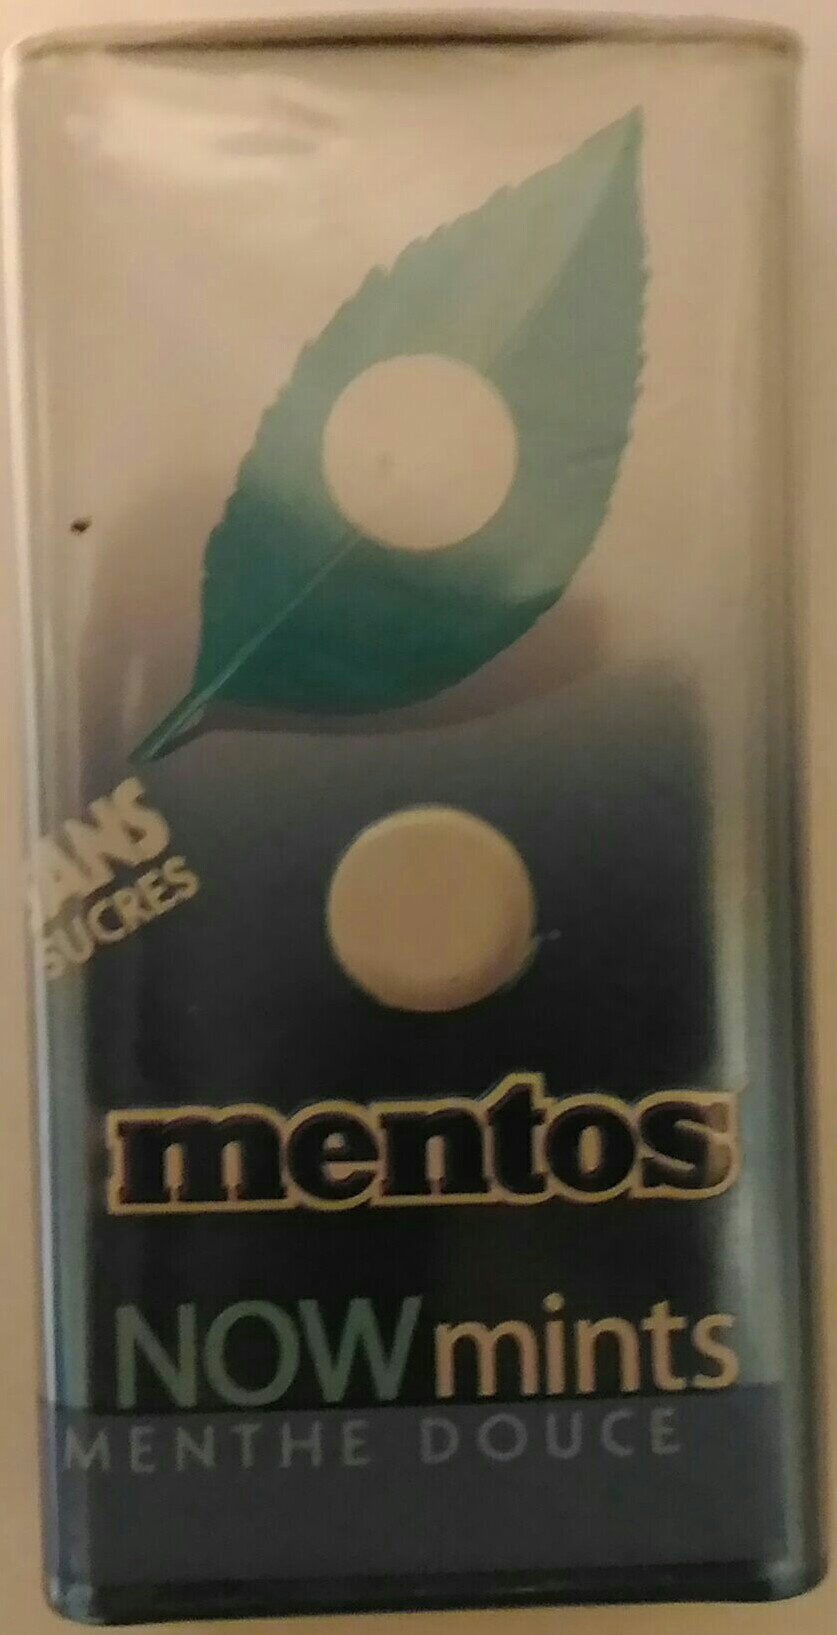 mentos now mints menthe douce sans sucres - Product - fr